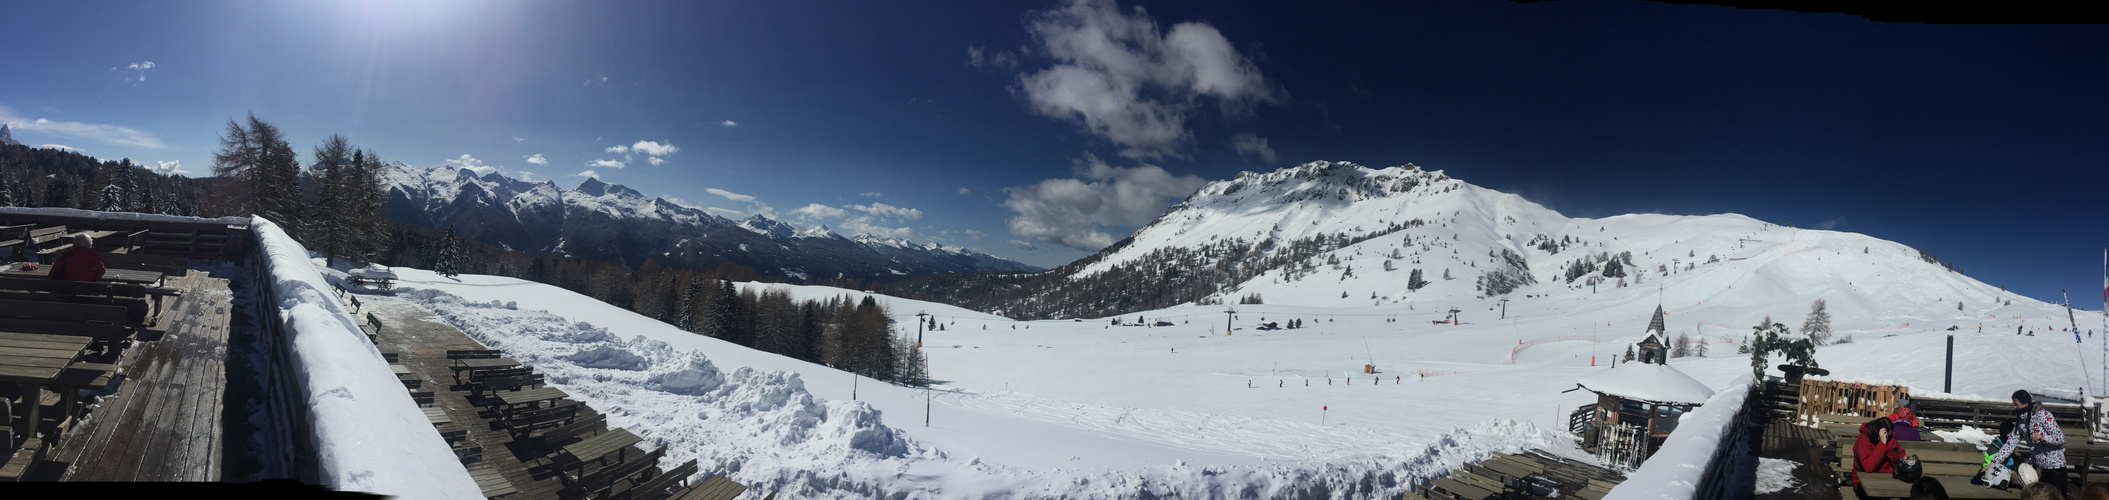 Baita Ciamp dele Strie - Skigebiet Alpe Lusia (Bellamonte)